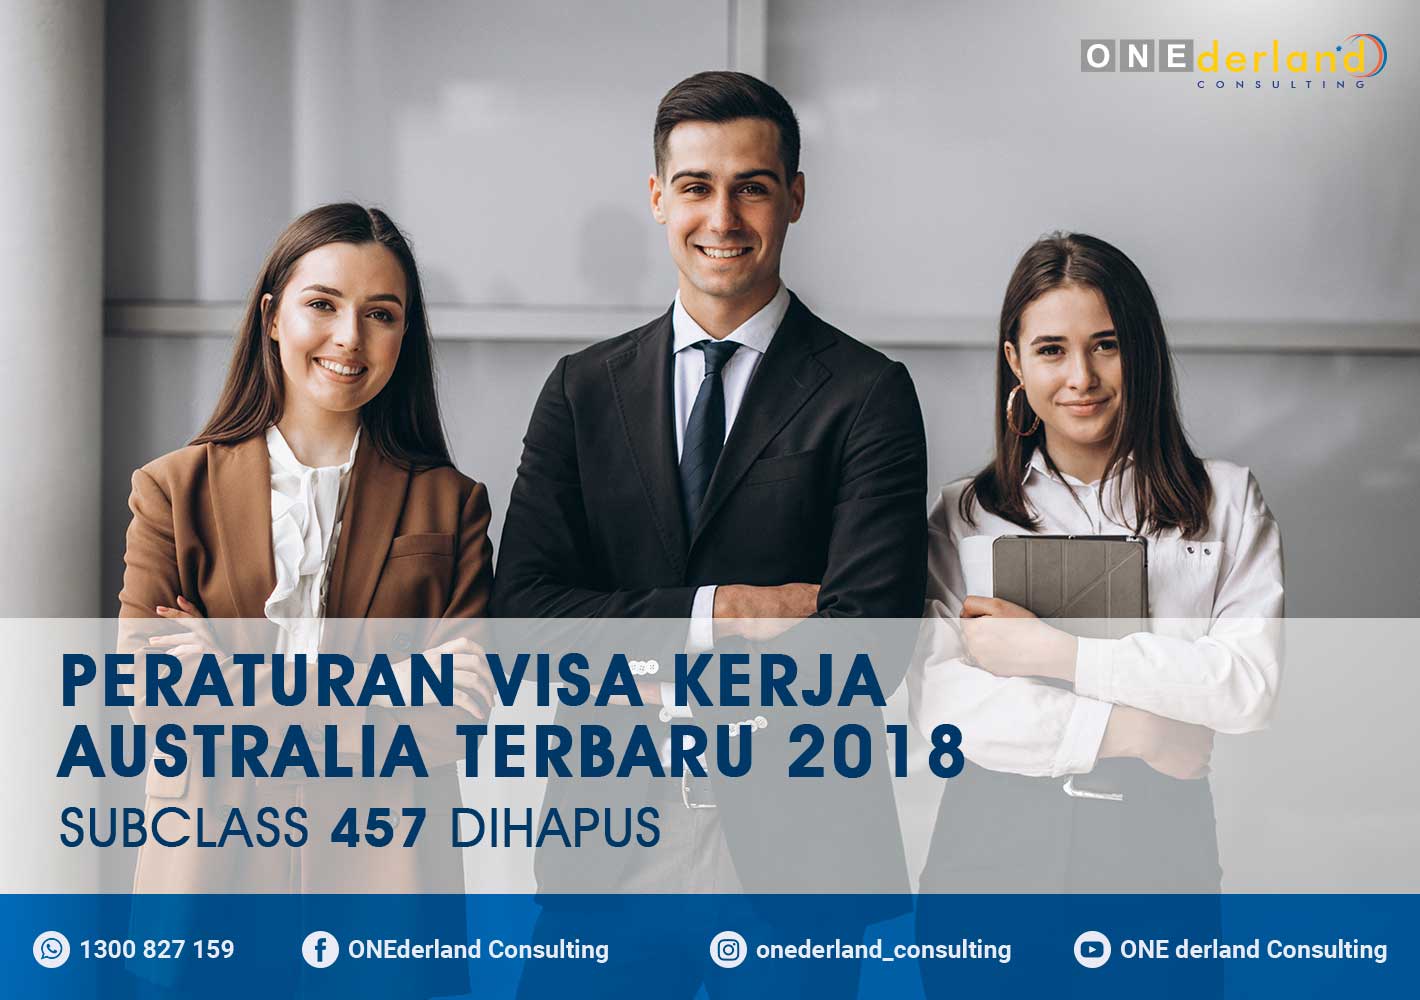 Peraturan Visa Kerja Australia Terbaru 2018 – Subclass 457 Dihapus